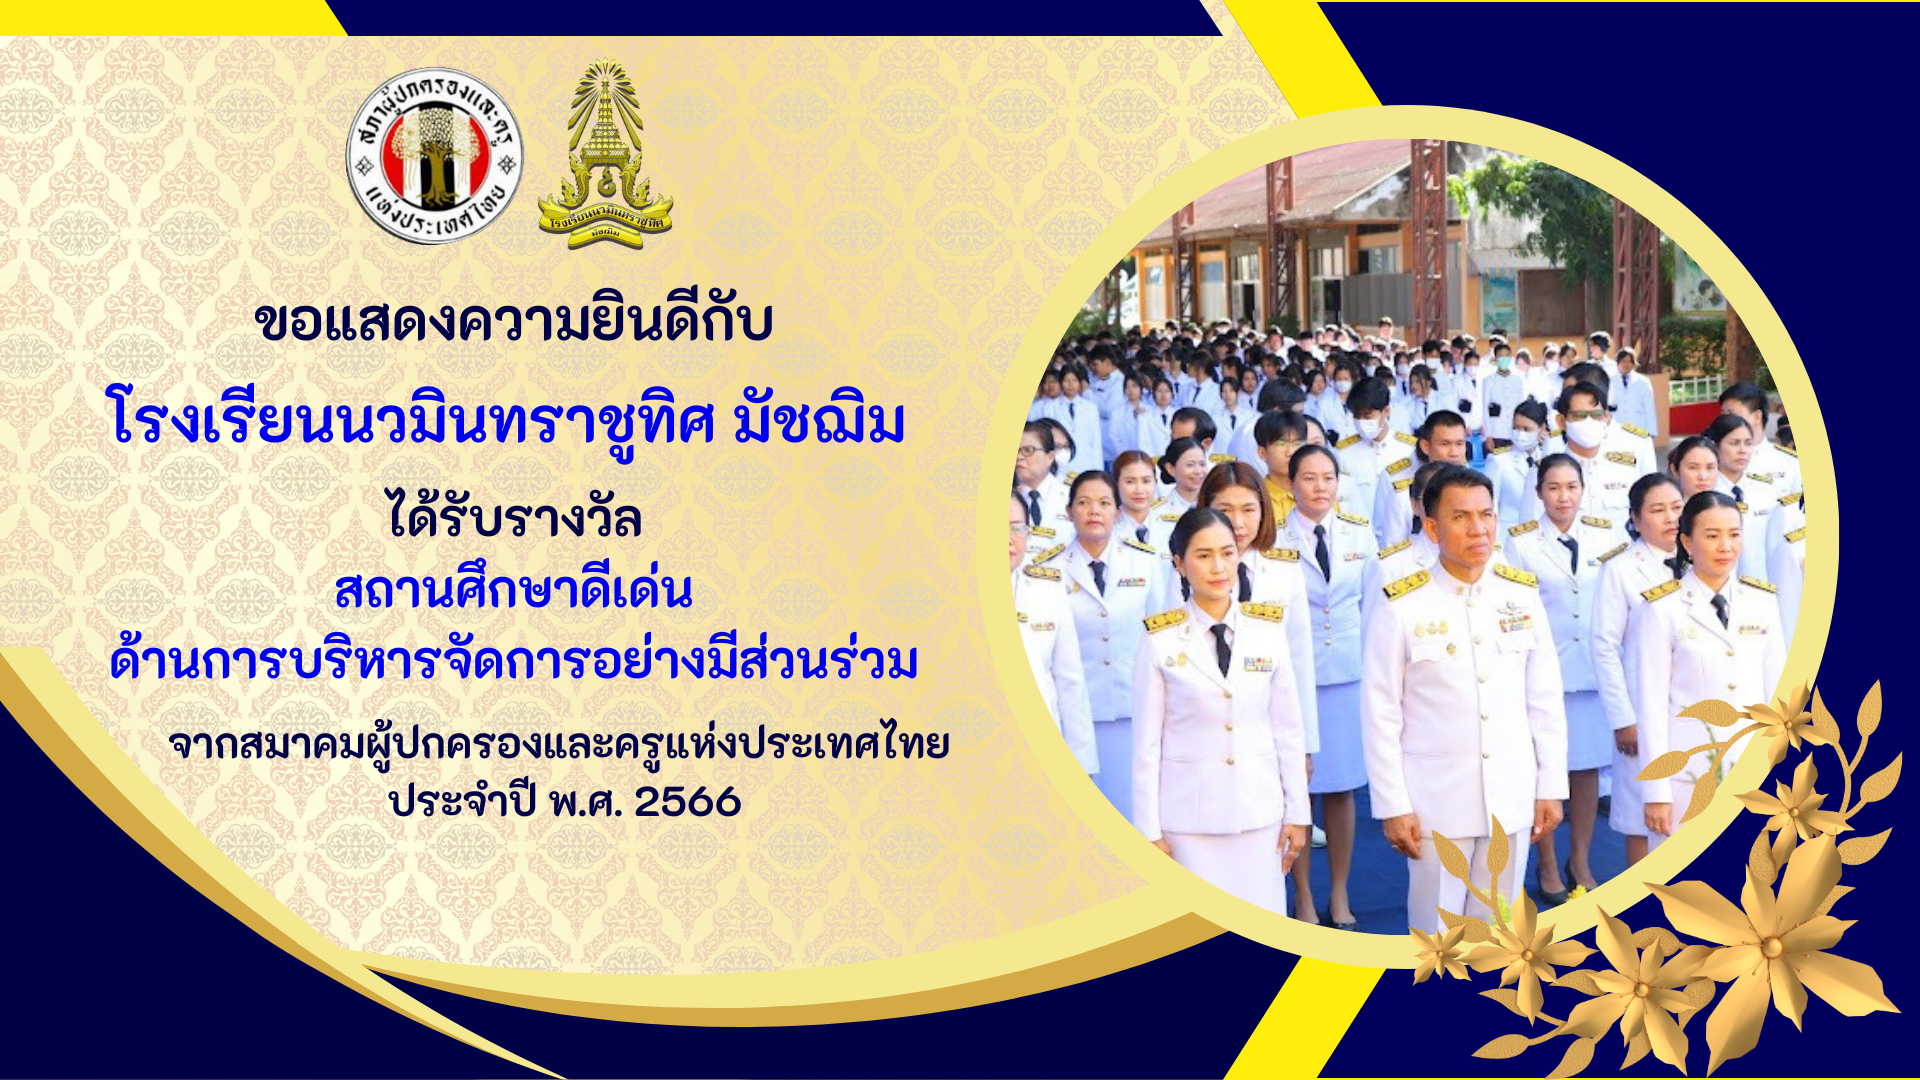 โรงเรียนนวมินทราชูทิศ. มัชฌิม กวาด 7 รางวัล จากสมาคมผู้ปกครองและครูแห่งประเทศไทย ###